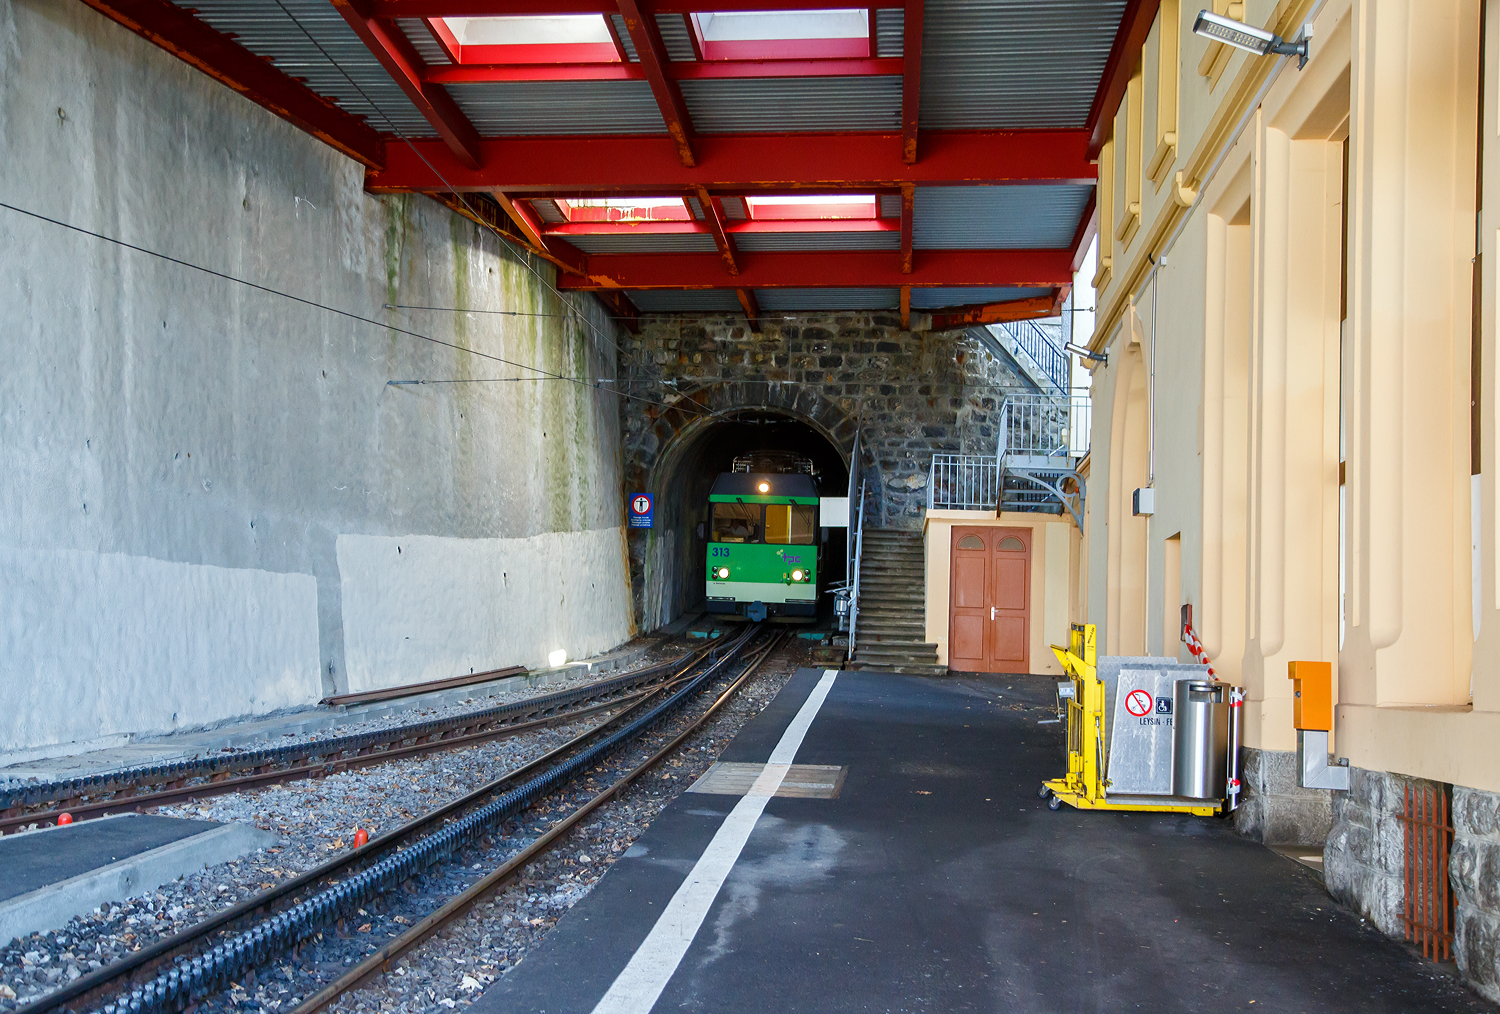 Der tpc AL BDeh 4/4 313 „La Berneuse“ (2. Klasse elektrischen Personentriebwagen mit Gepckabteil fr den gemischten Zahnrad- und Adhsionsbetrieb) mit den beiden AL Steuerwagen AL Bt 362 und AL Bt 363 kommt am 08 September 2023 vom Leysin - Grand-Htel hinab, verlsst gerade den 287 m langen Kehrtunnel Leysin und erreicht somit die Station Leysin-Feydey. Der dreiteilige Zug fhrt als Regionalzug (R 25) von Leysin - Grand-Htel nach Aigle.

Eine Einzelfahrkarte/Einzelbillett von Aigle nach Leysin - Grand-Htel (5 Zonen) kostet im Vollpreis 9,20 CHF/Person somit die Hin- und Rckfahrt (da vermutlich ber 2 Stunden) 18,40 CHF/Person. Wir hatten aber Glck (nicht nur mit dem wunderschnen Wetter), die tpc feierte 125 Jahre der BVB an dem Wochenende, so bekamen wir Tageskaten frs ganze Netz der TPC fr 10,- CHF/Person. Die drei TPC-Strecken ab Aigle (AL, ASD und AOMC) konnten wir so gut an einem Tag erkunden bzw. erfahren. Fr die 12,4 Kilometer lange Strecke von Bex nach Villars-sur-Ollon der BVB (Bex–Villars–Bretaye) brauchten wir dann einen ganzen weiteren Tag, den man auch einrechnen sollt.

Erklrung der verwendeten Abkrzungen:
tpc = Tansports Publics du Chablais
AL = Chemin de fer Aigle–Leysin (Aigle-Leysin-Bahn)
ASD = Aigle–Spey–Diablerets
AOMC = Aigle–Ollon–Monthey–Champry
BVB = Chemin de fer Bex–Villars–Bretaye